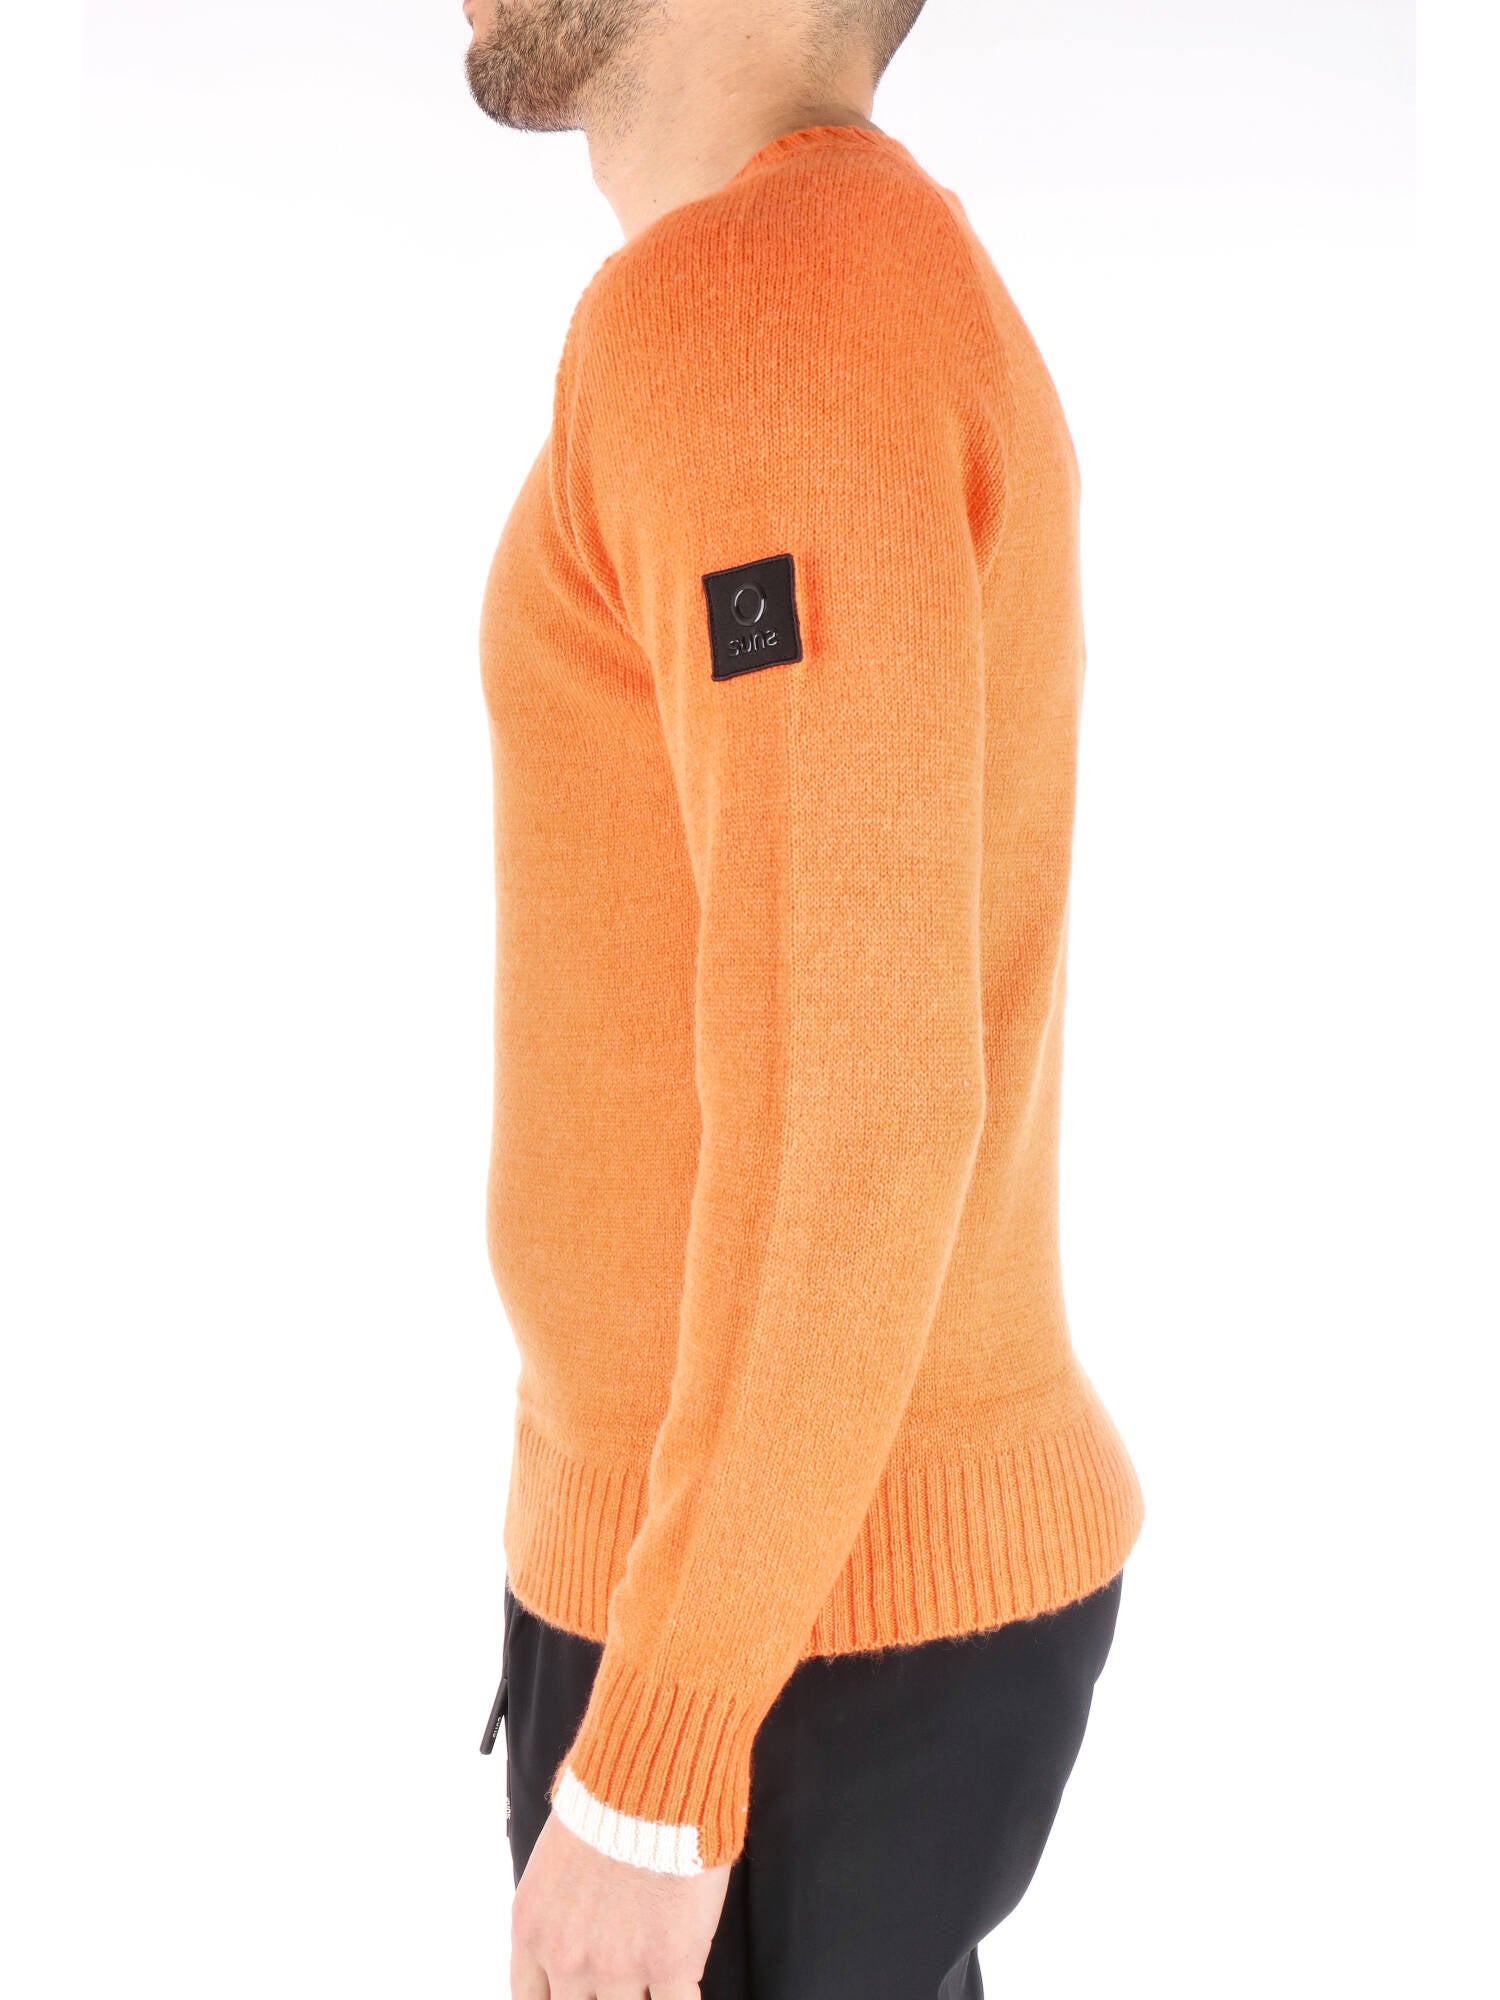 Suns uomo maglione girocollo arancione